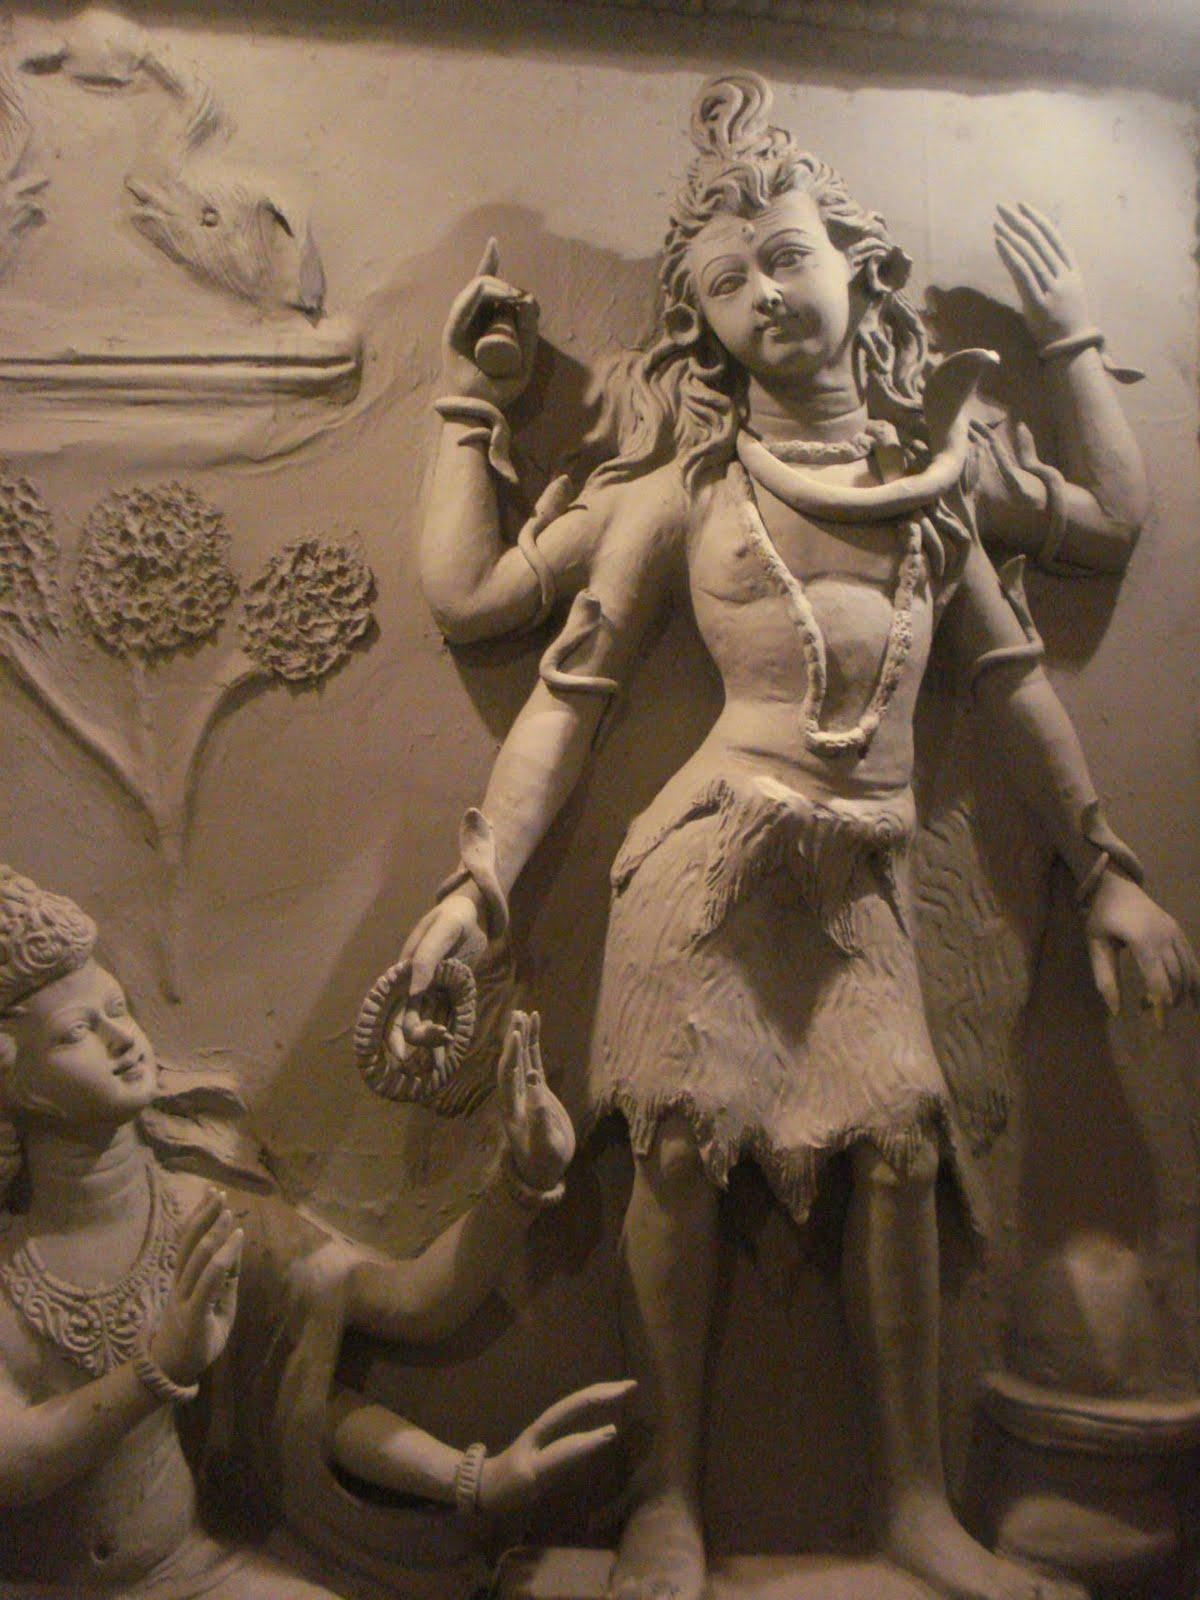 Ujjainmahakal Shiva Mural - Mural De Shiva Mahakal En Ujjain Fondo de pantalla